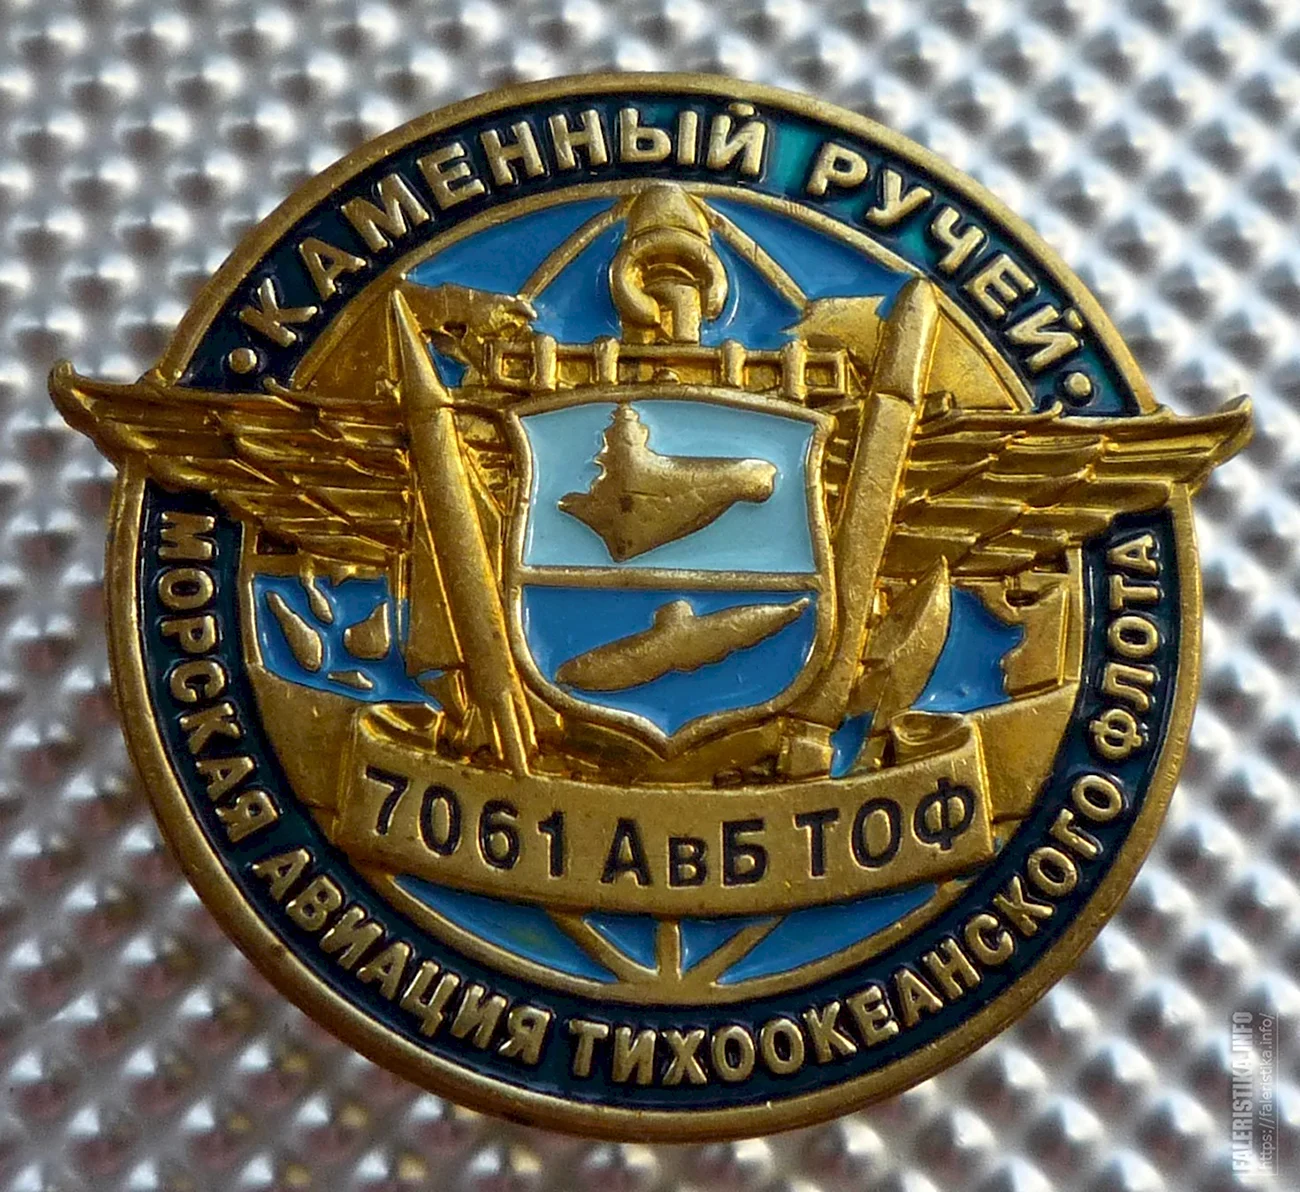 Морская Авиация ТОФ эмблема. Поздравление